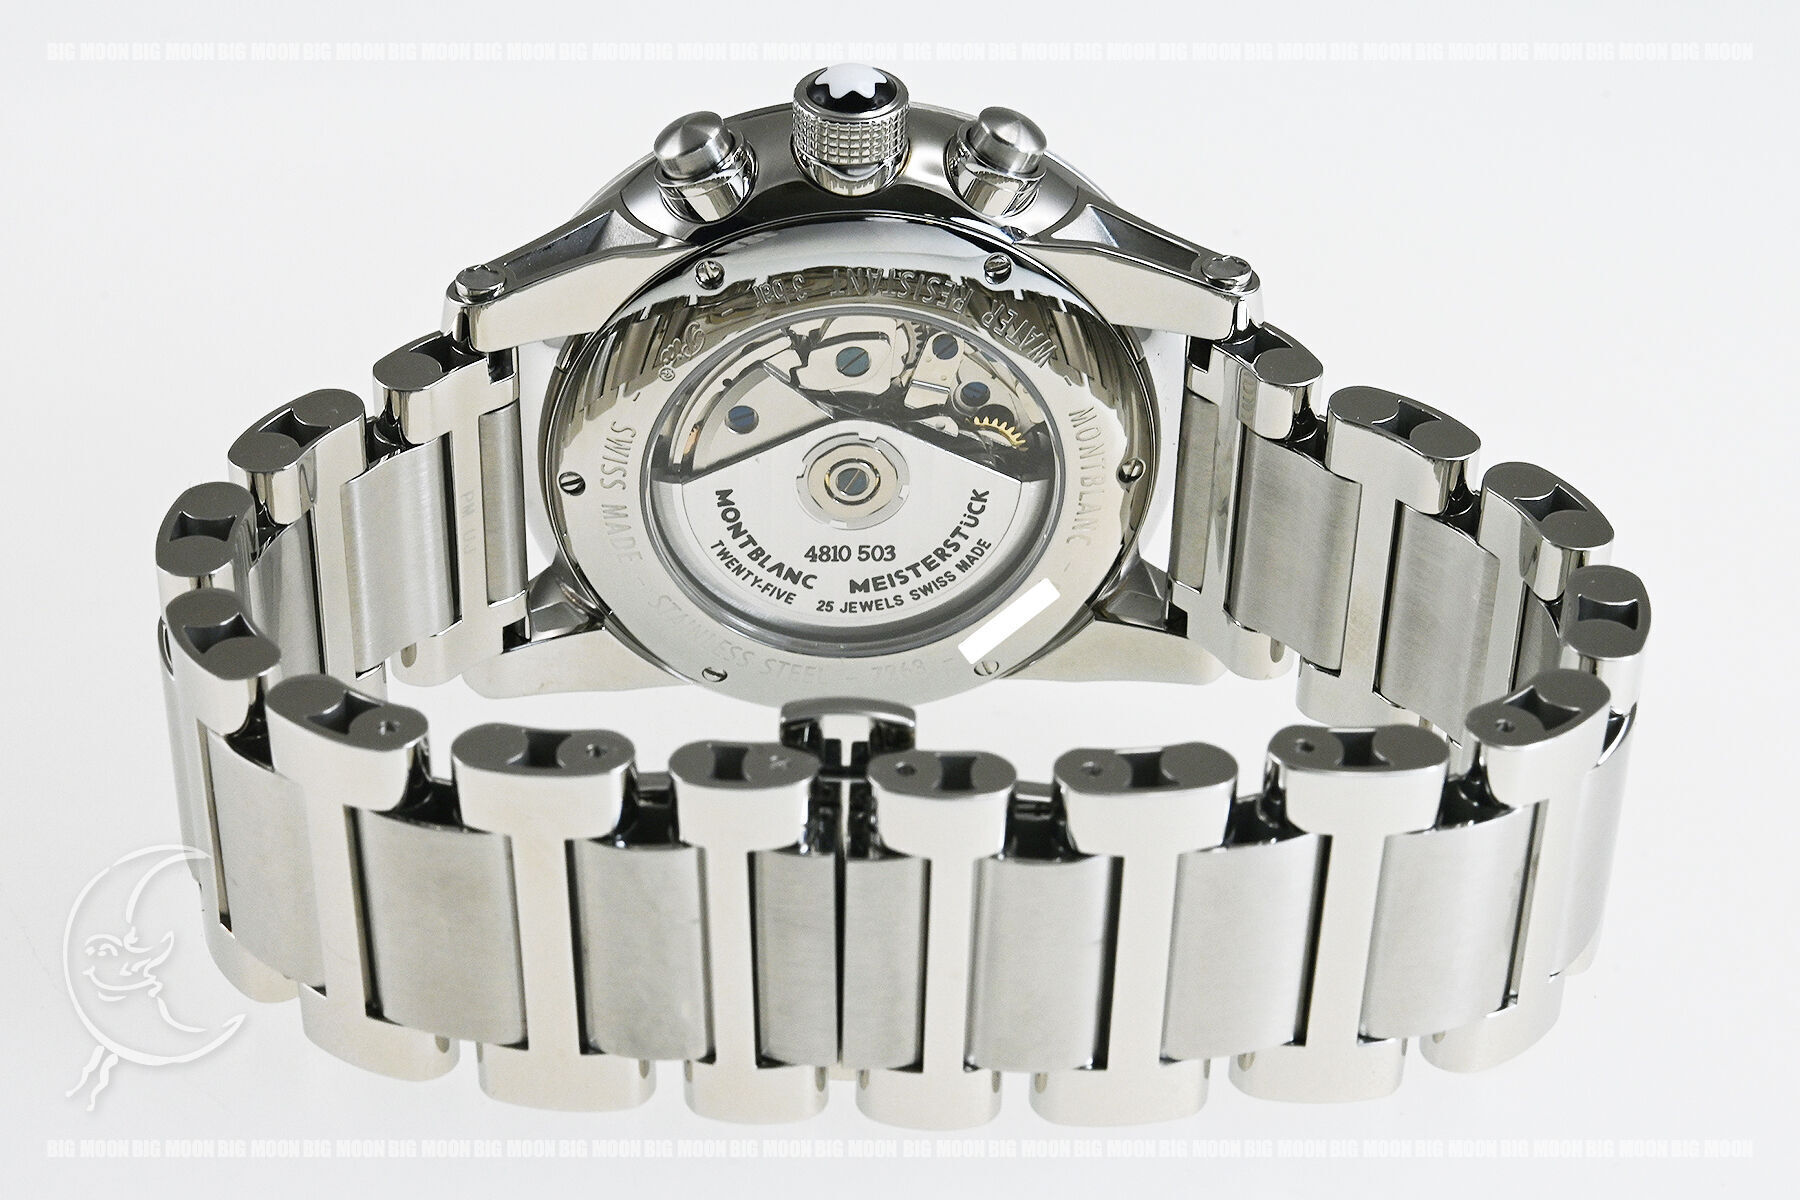 MONTBLANCのタイムウォーカー クロノボイジャー UTC「107303」の販売なら名古屋大須の中古時計専門店ビッグムーン